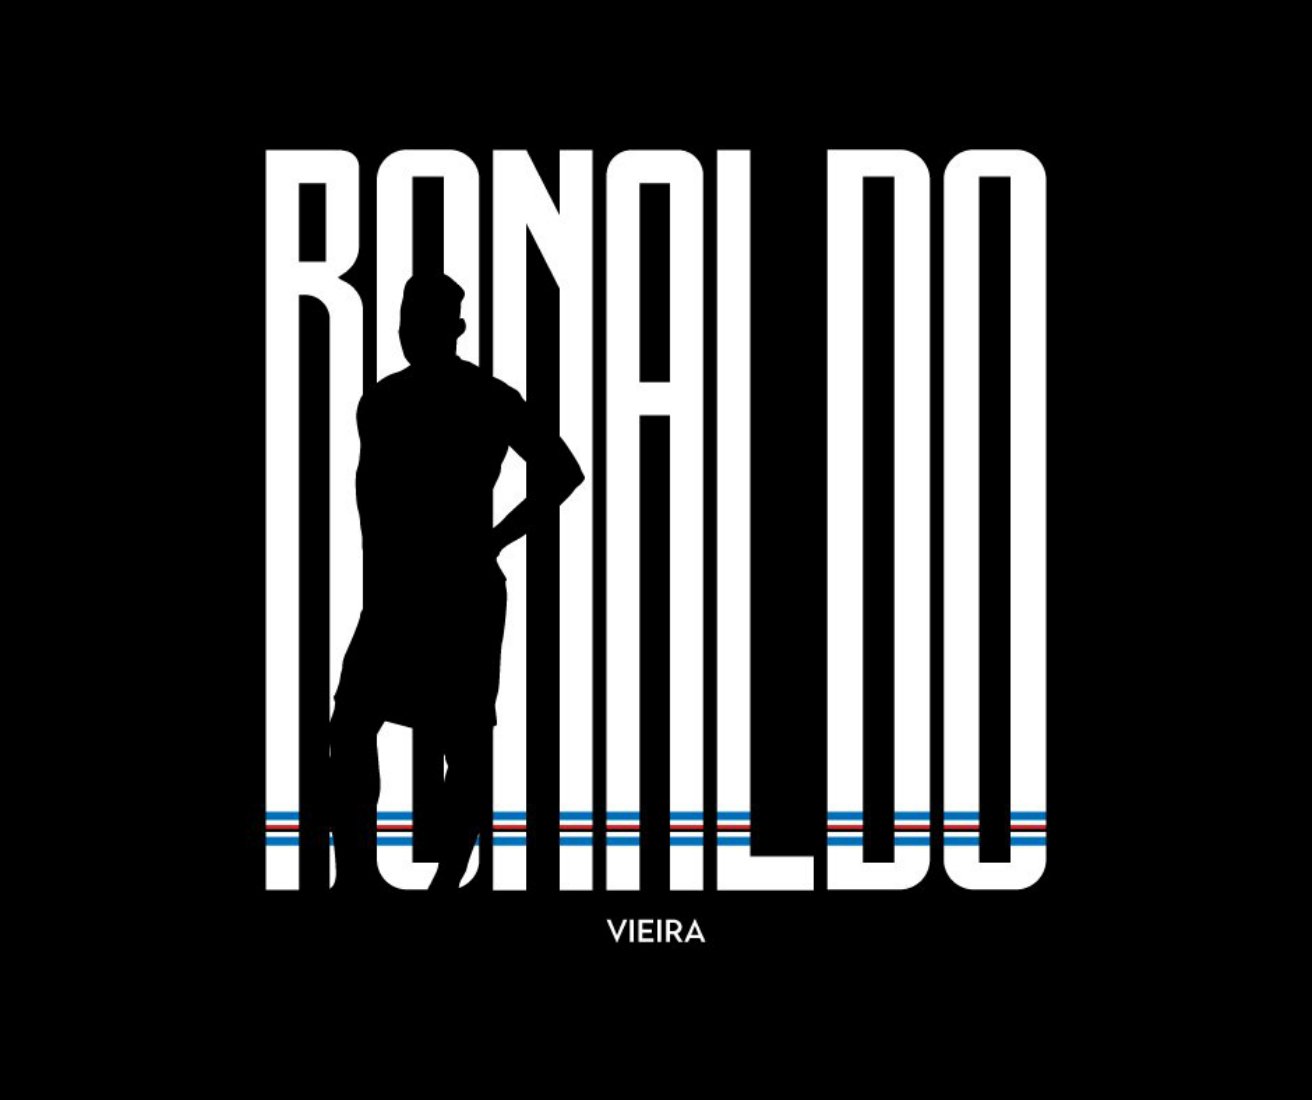 La Sampdoria no es menos que la Juventus y también ficha a Ronaldo